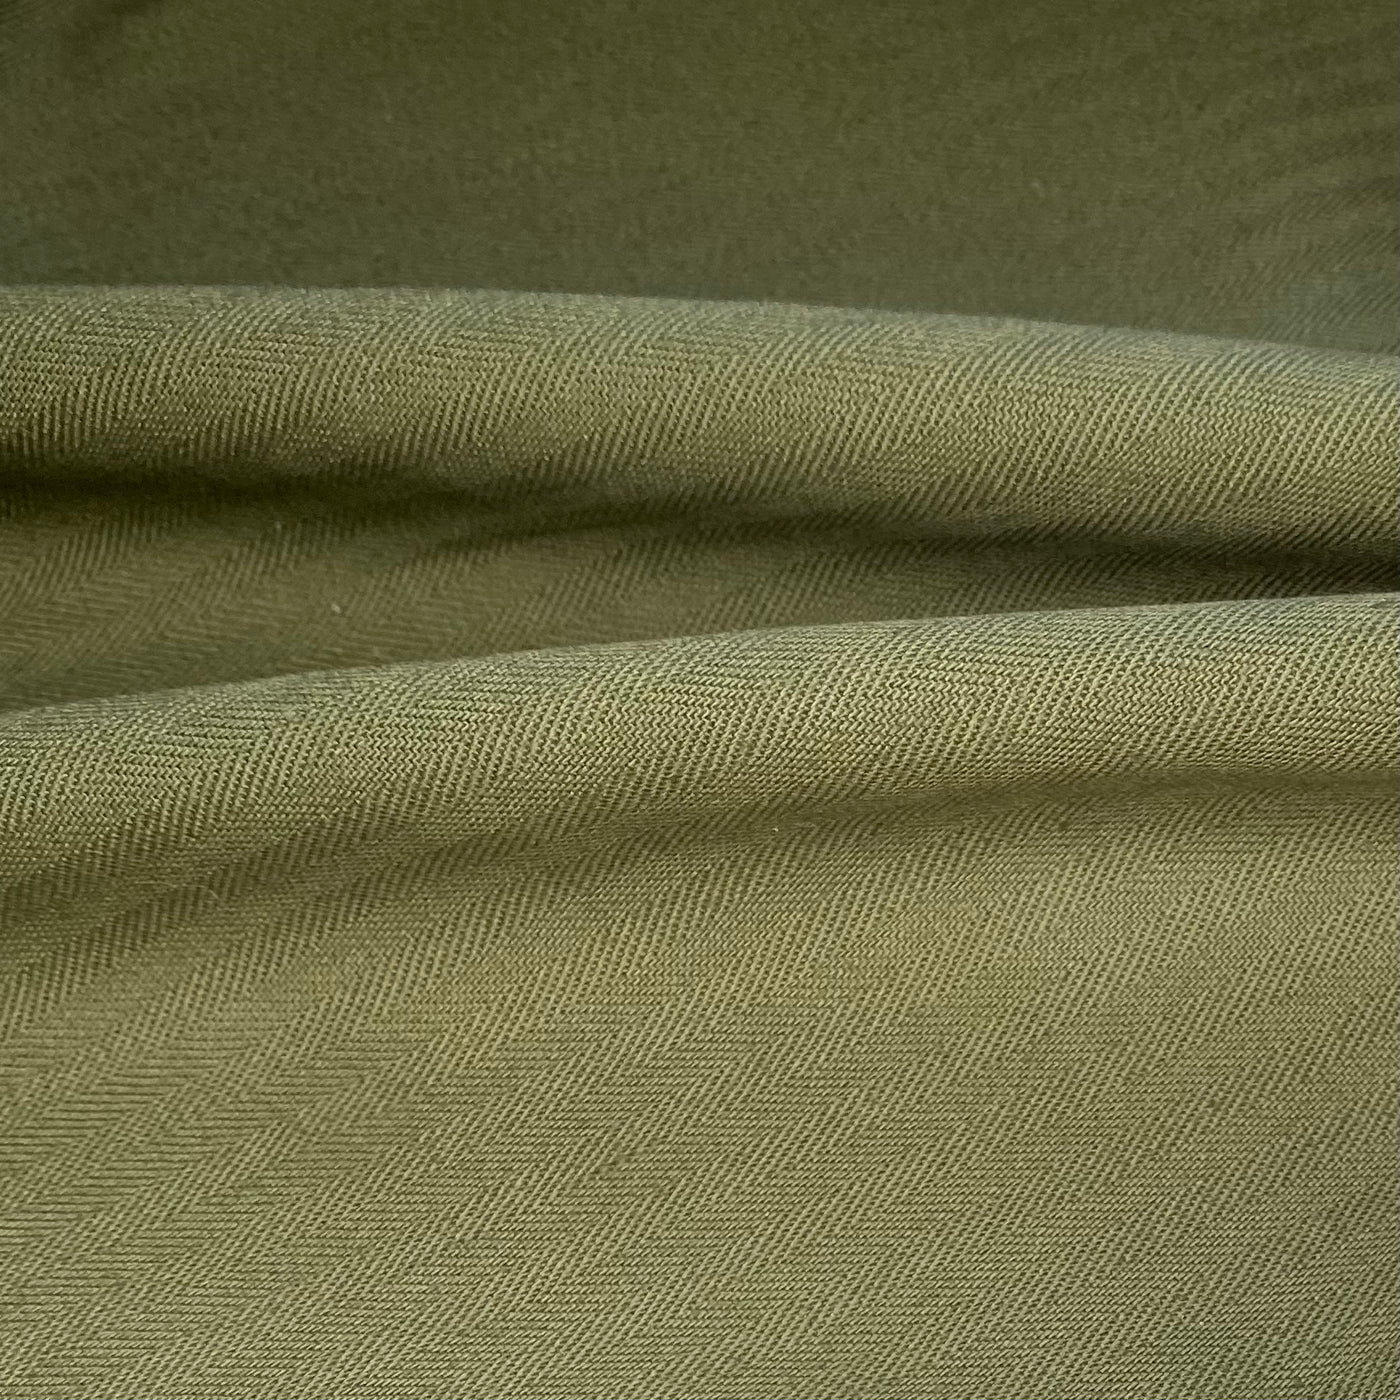 Coutil Cotton Canvas - 9oz - Olive - Remnant